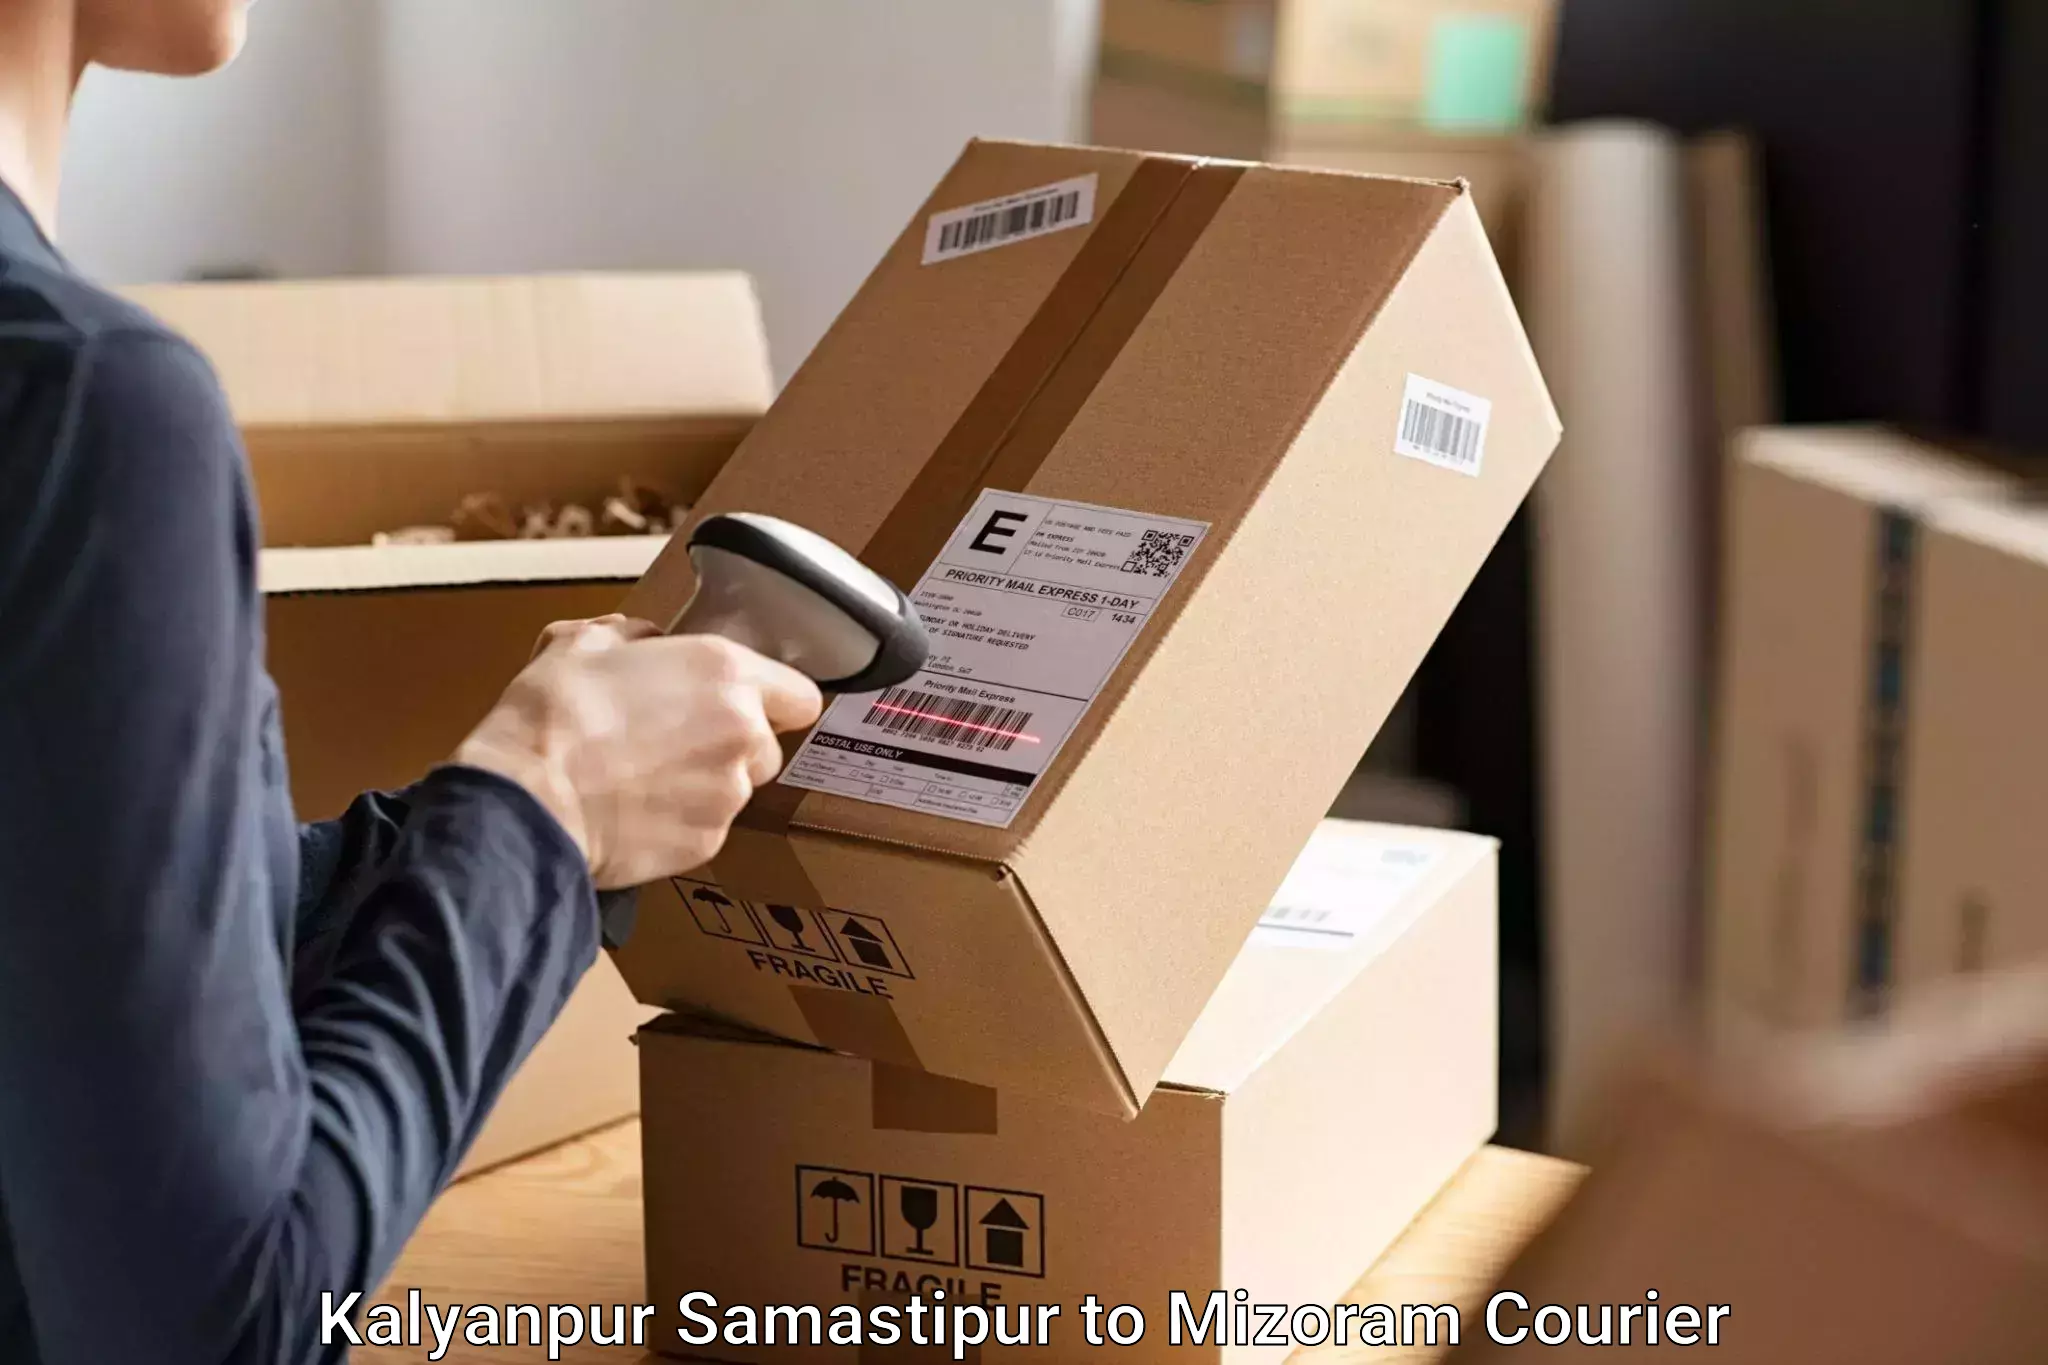 Baggage transport professionals Kalyanpur Samastipur to Thenzawl